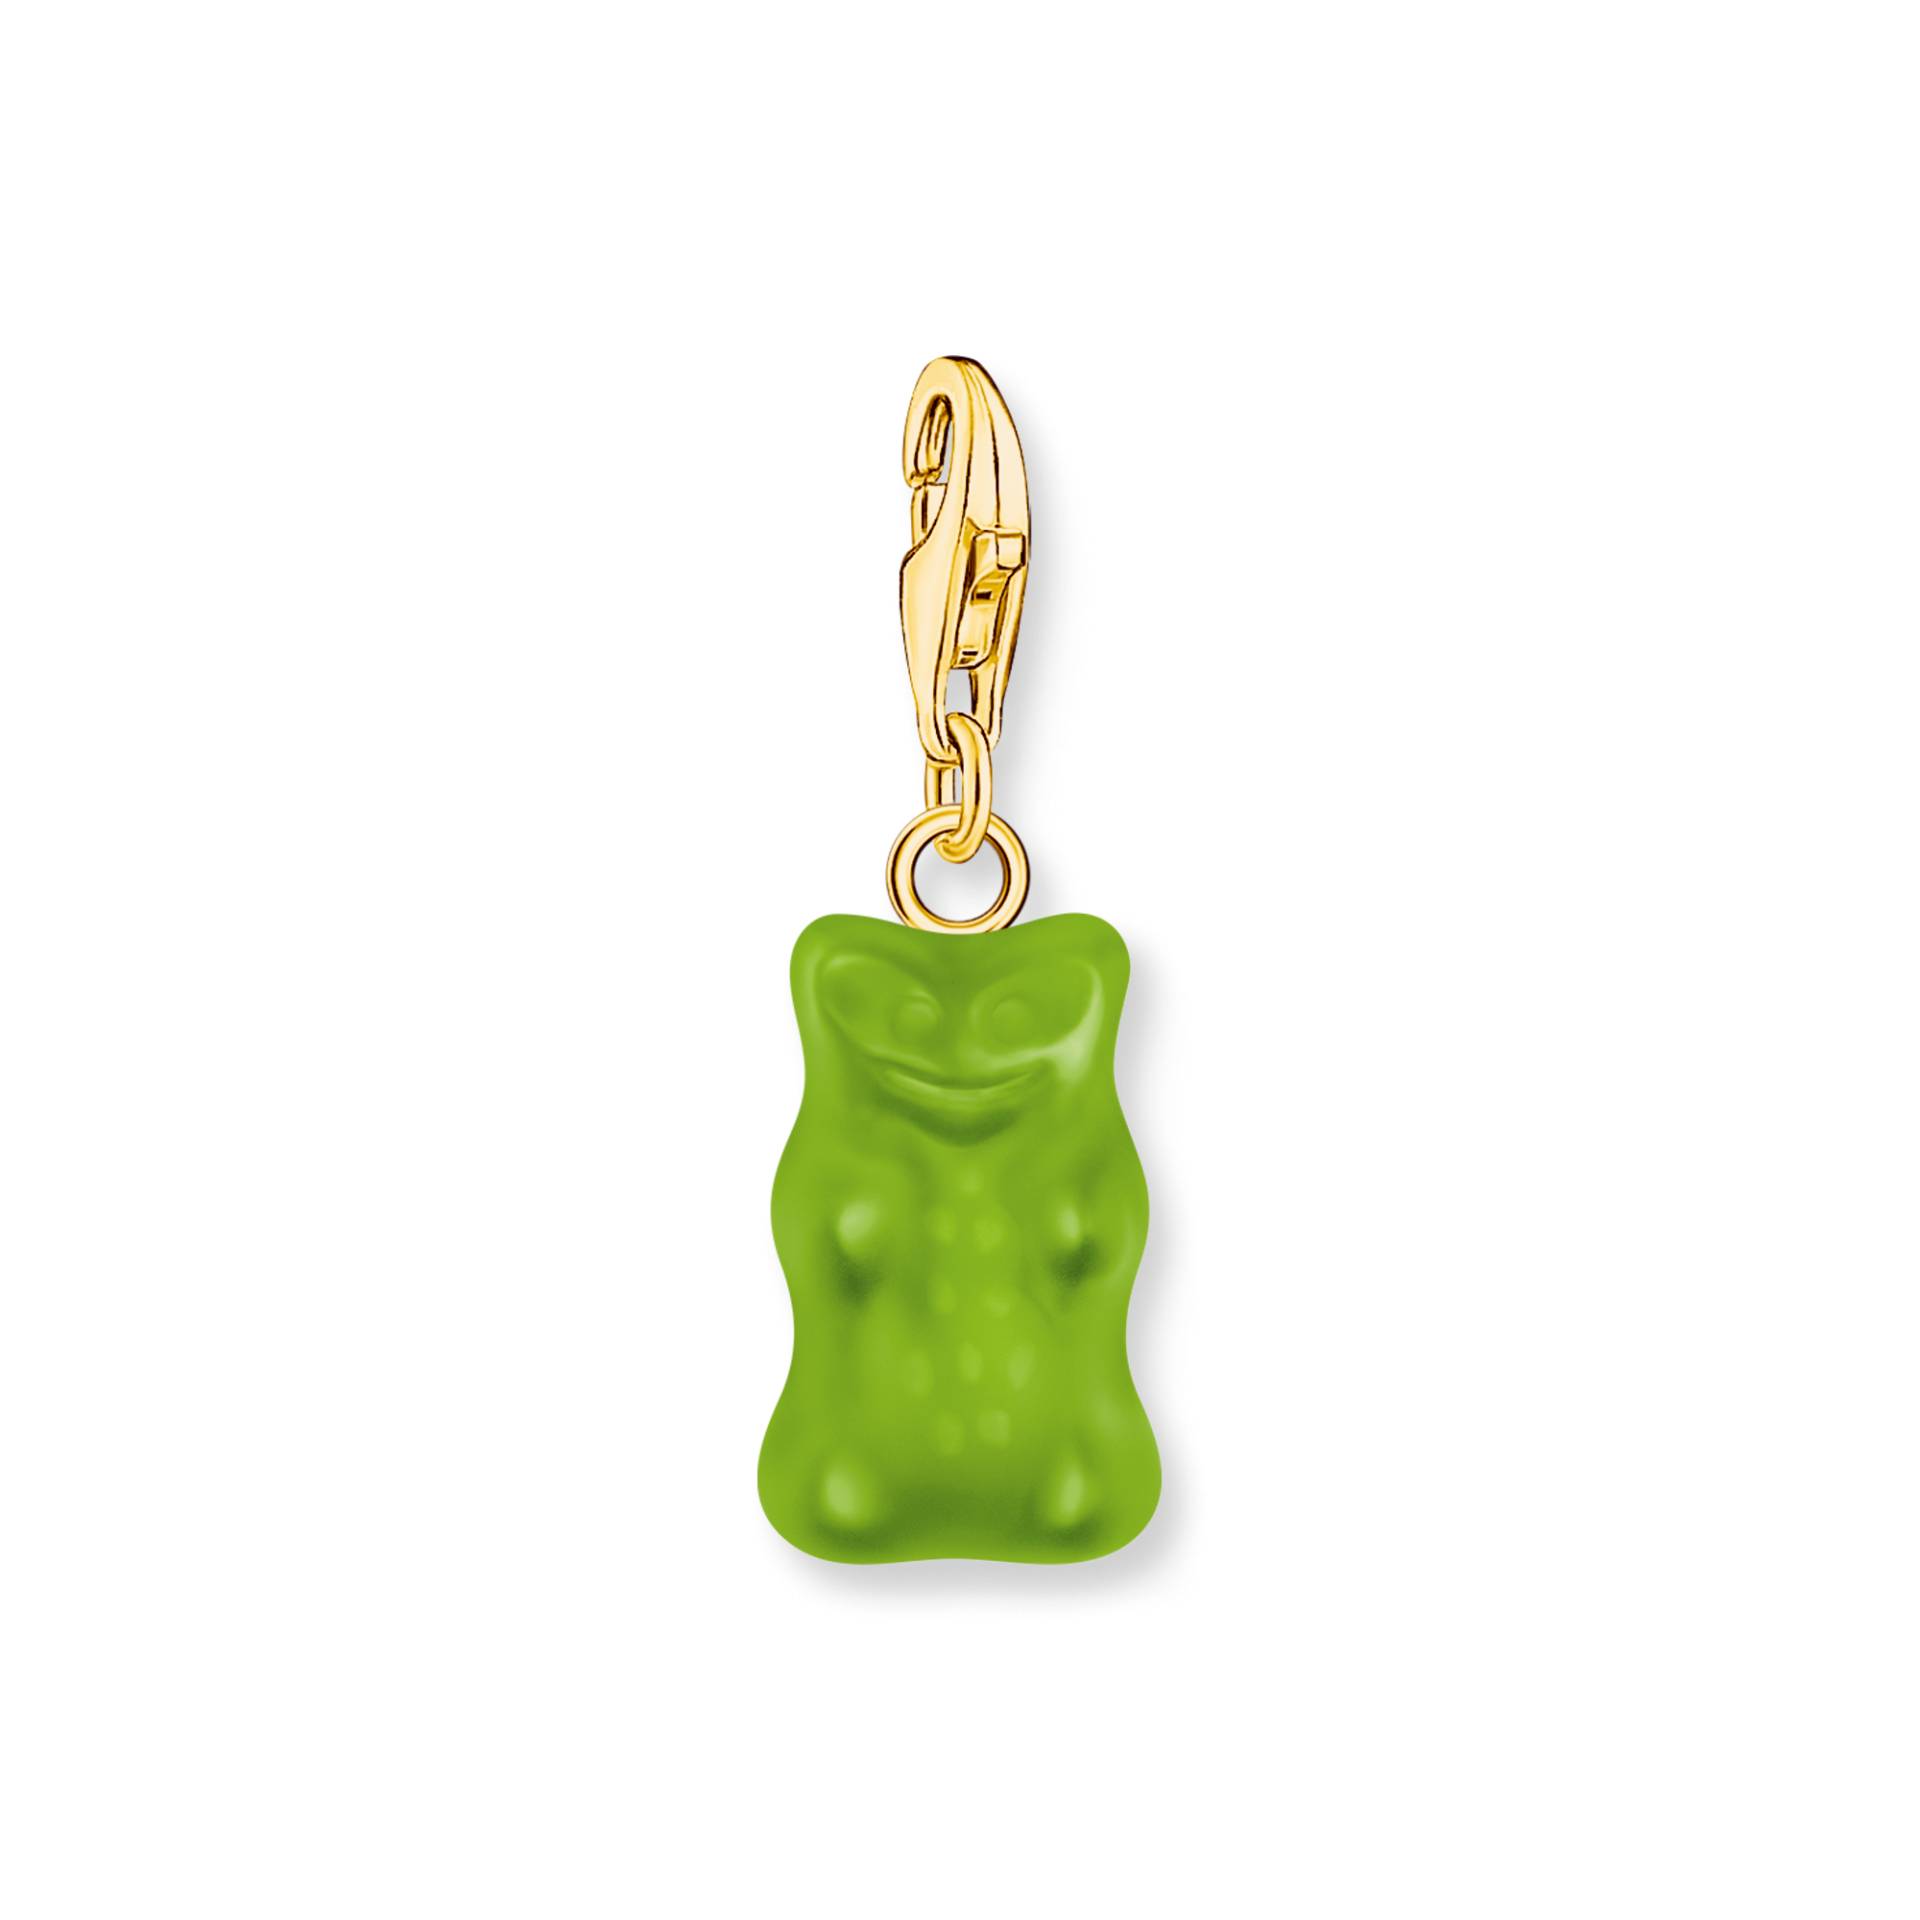 Thomas Sabo Charm-Goldbären-Anhänger in Grün vergoldet grün 2192-413-6 von Thomas Sabo